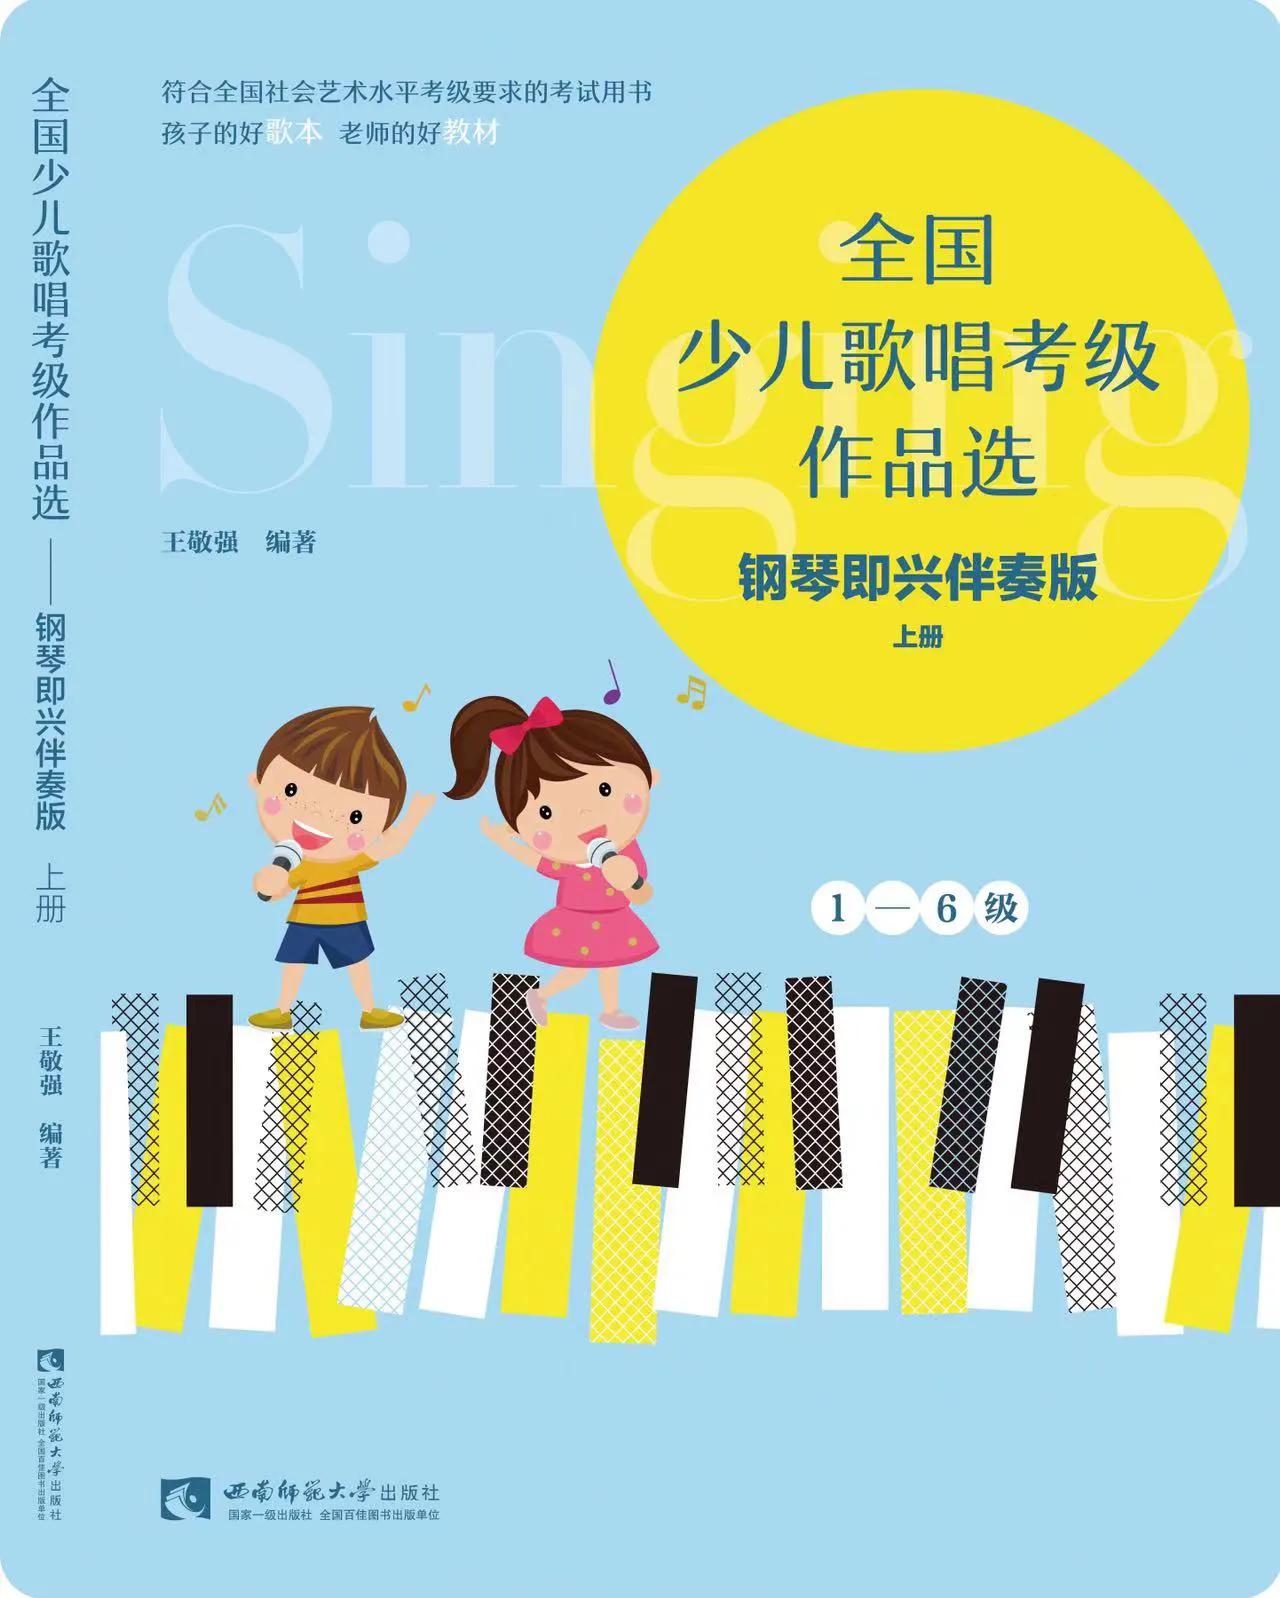 “文化润疆”一一王敬强新编钢琴即兴伴奏教材 出版全国发行